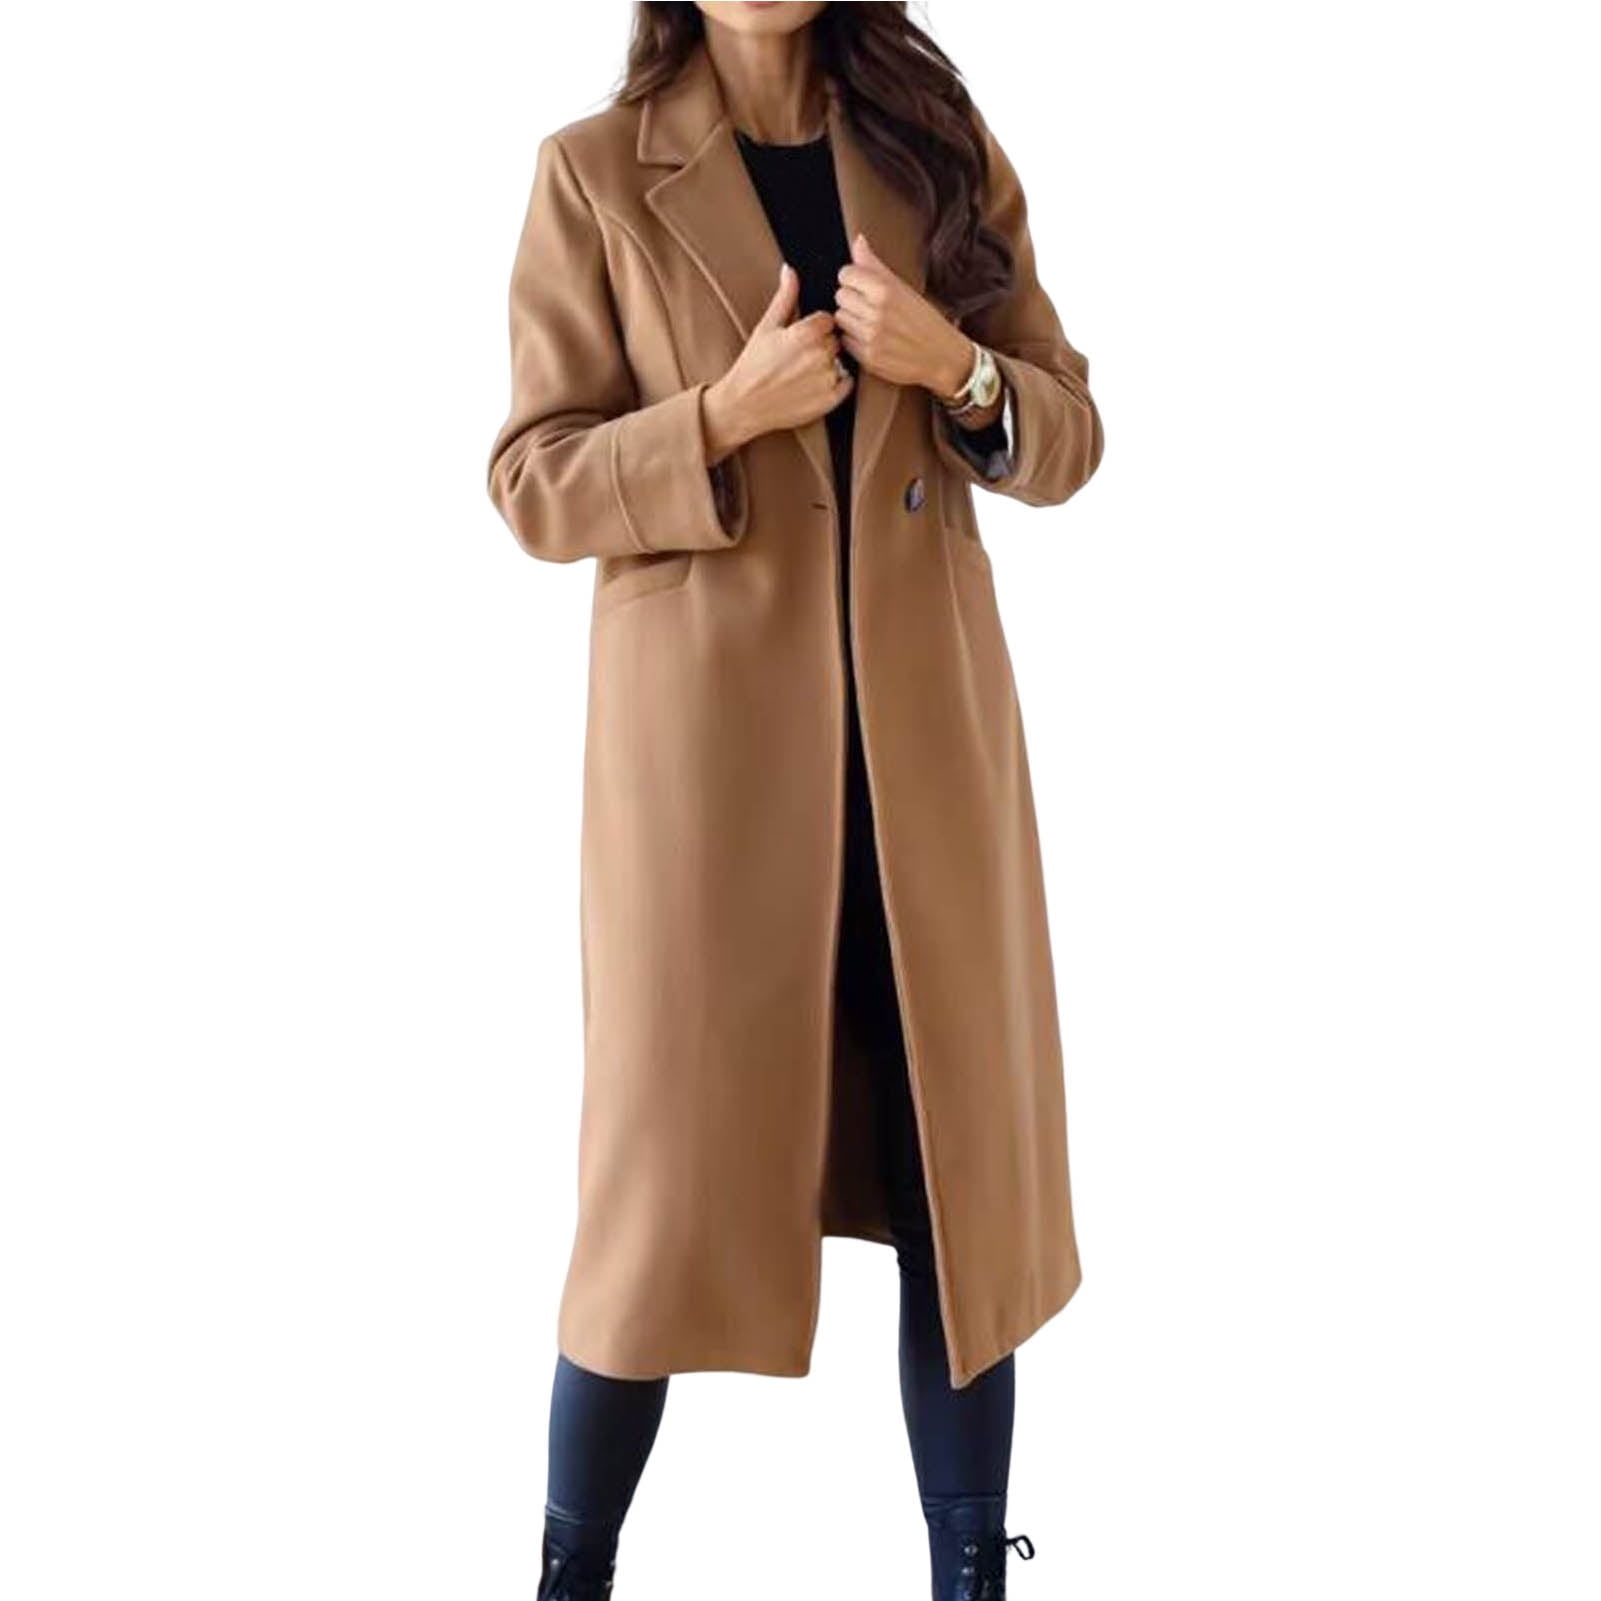 Solid Long Length Outerwear, Women's Casual Buttons Long Sleeve Fashion Loose Women's Clothing Coat,Women Winter Coats,Temu